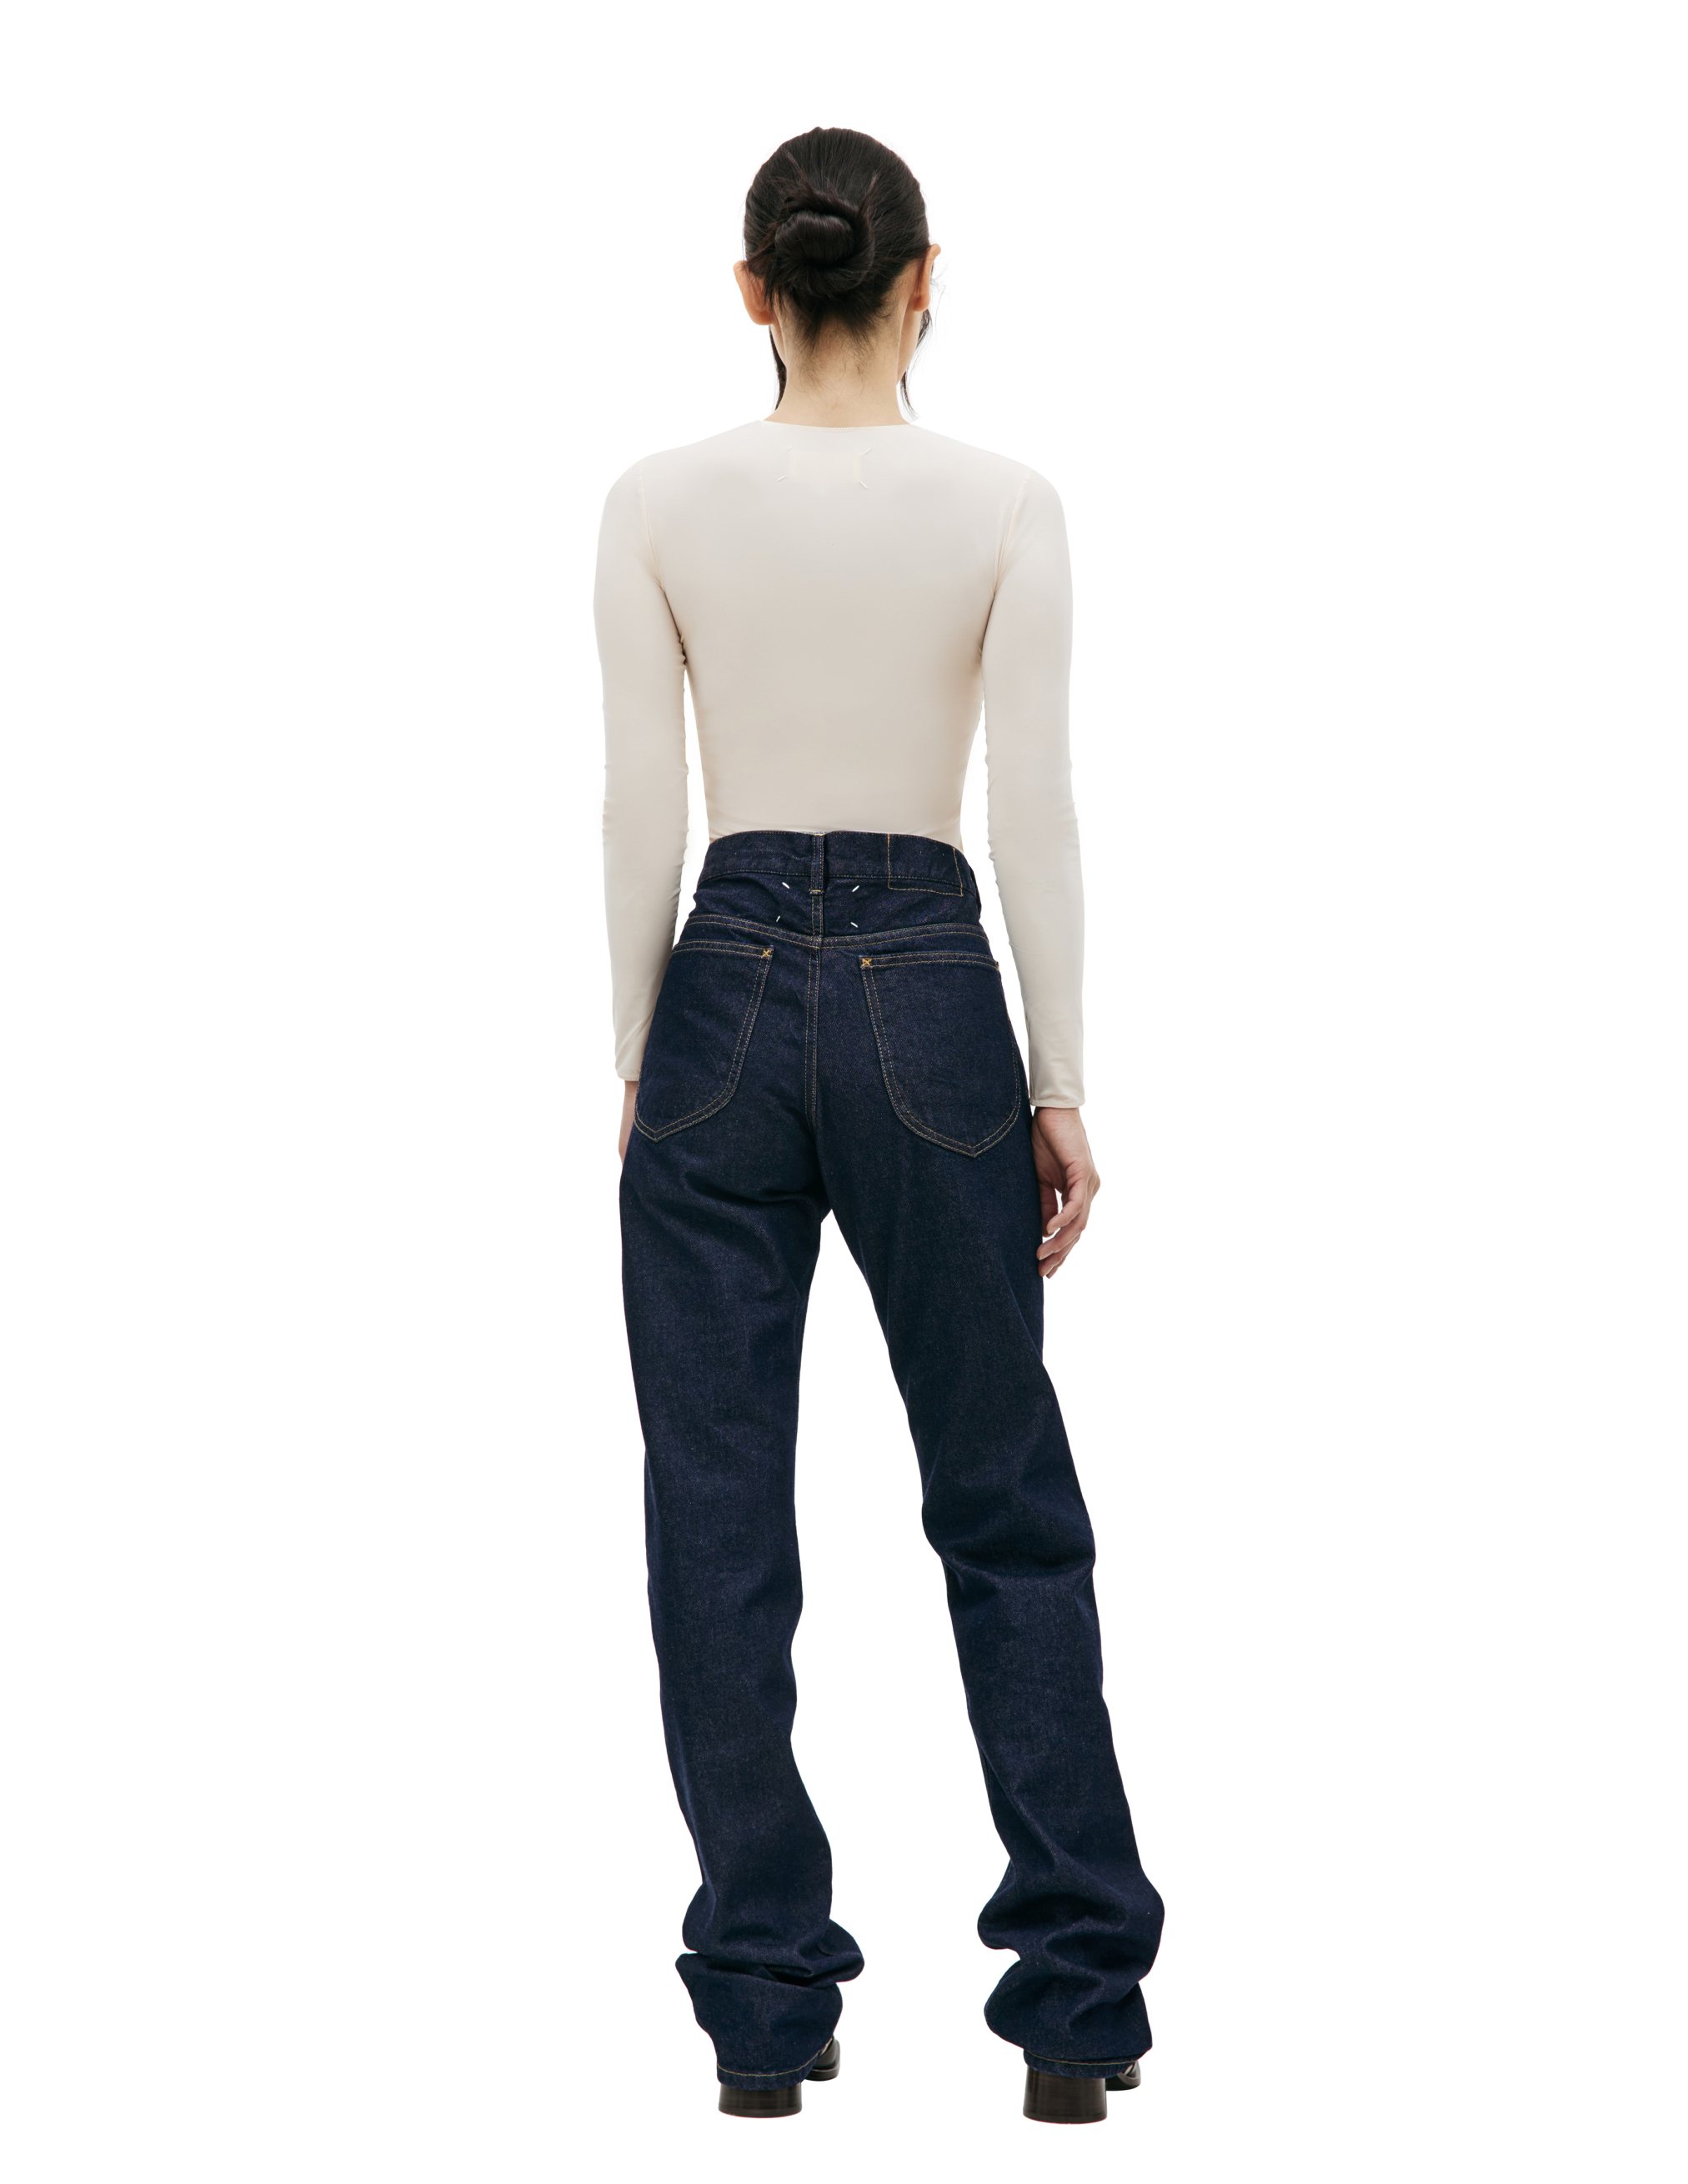 Прямые джинсы с контрастной строчкой Maison Margiela S67LA0026/S30854/470, размер 30;32;34 S67LA0026/S30854/470 - фото 3